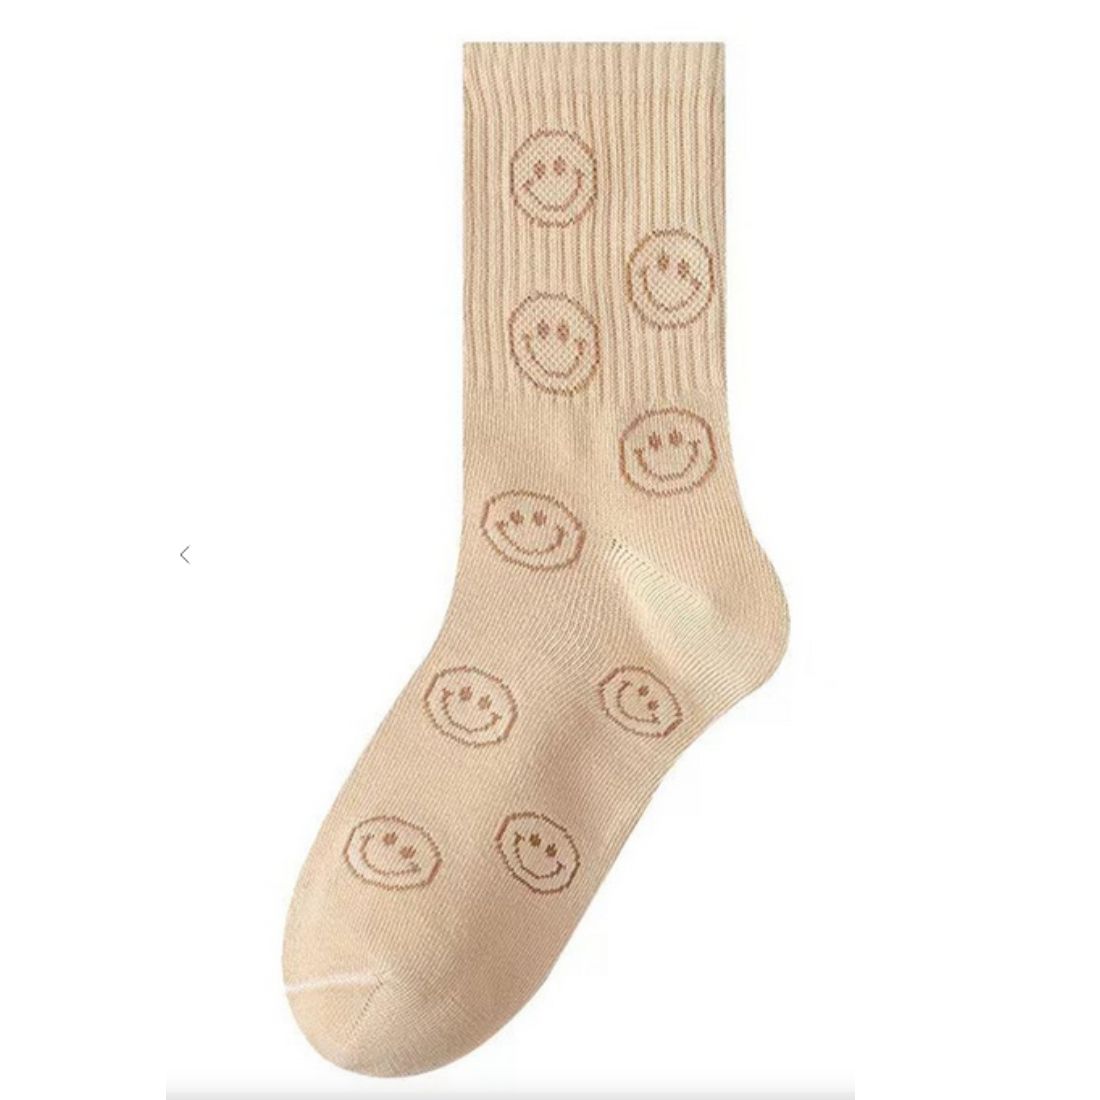 smiley socks in sand 111318